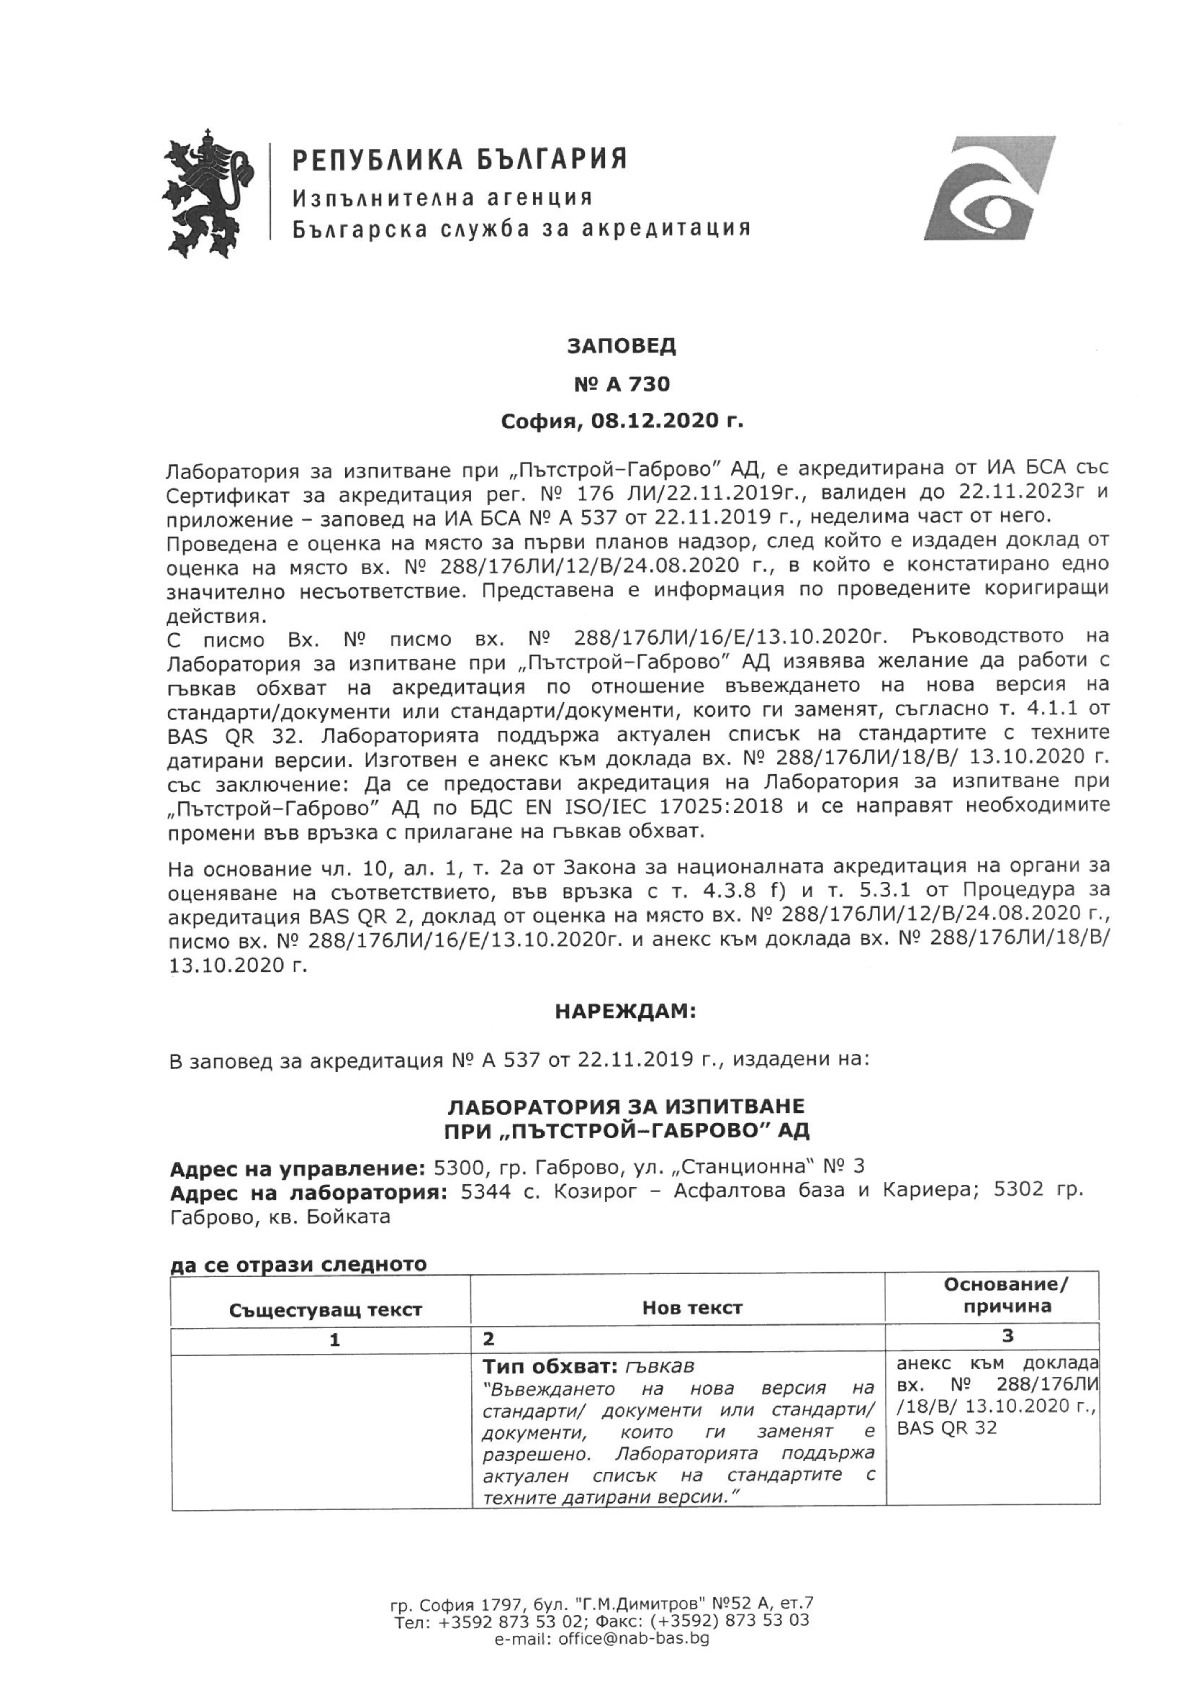 Сертификат за акредитация на лаборатория за изпитване при Пътстрой-Габрово АД